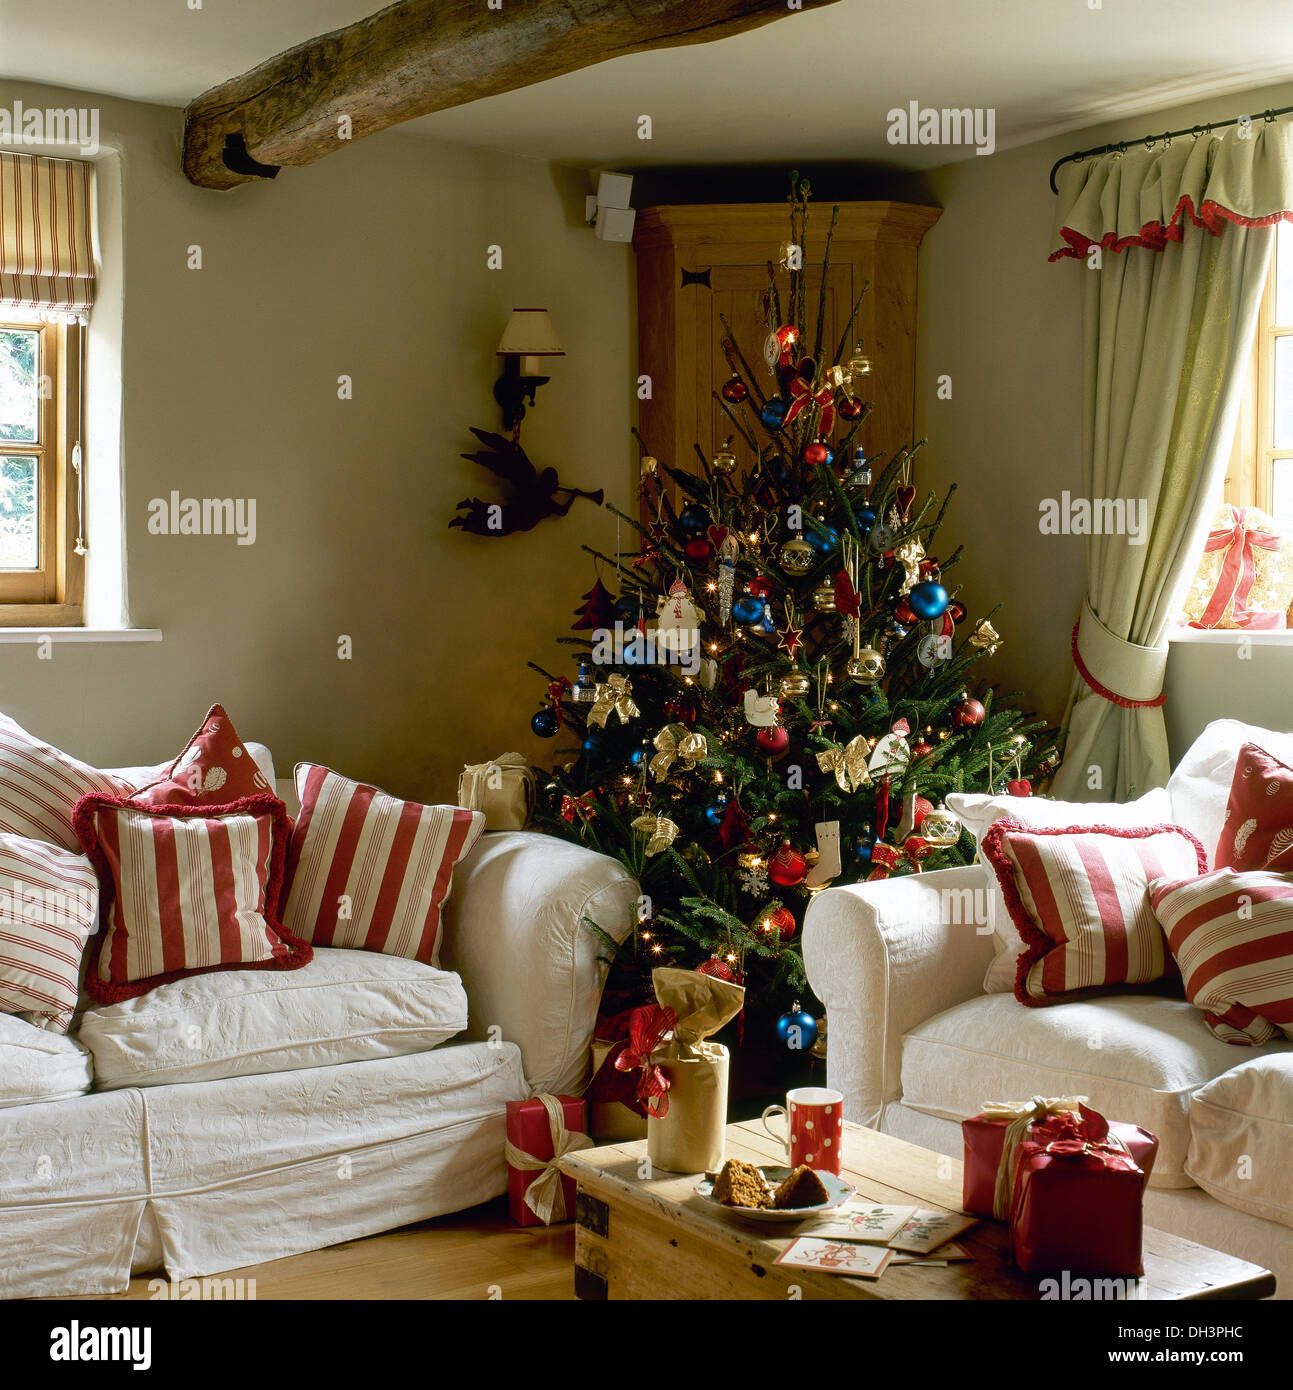 Albero di Natale decorato in angolo del cottage in salotto con strisce  rosse cuscini sui divani bianchi e i regali di Natale sul tavolo Foto stock  - Alamy